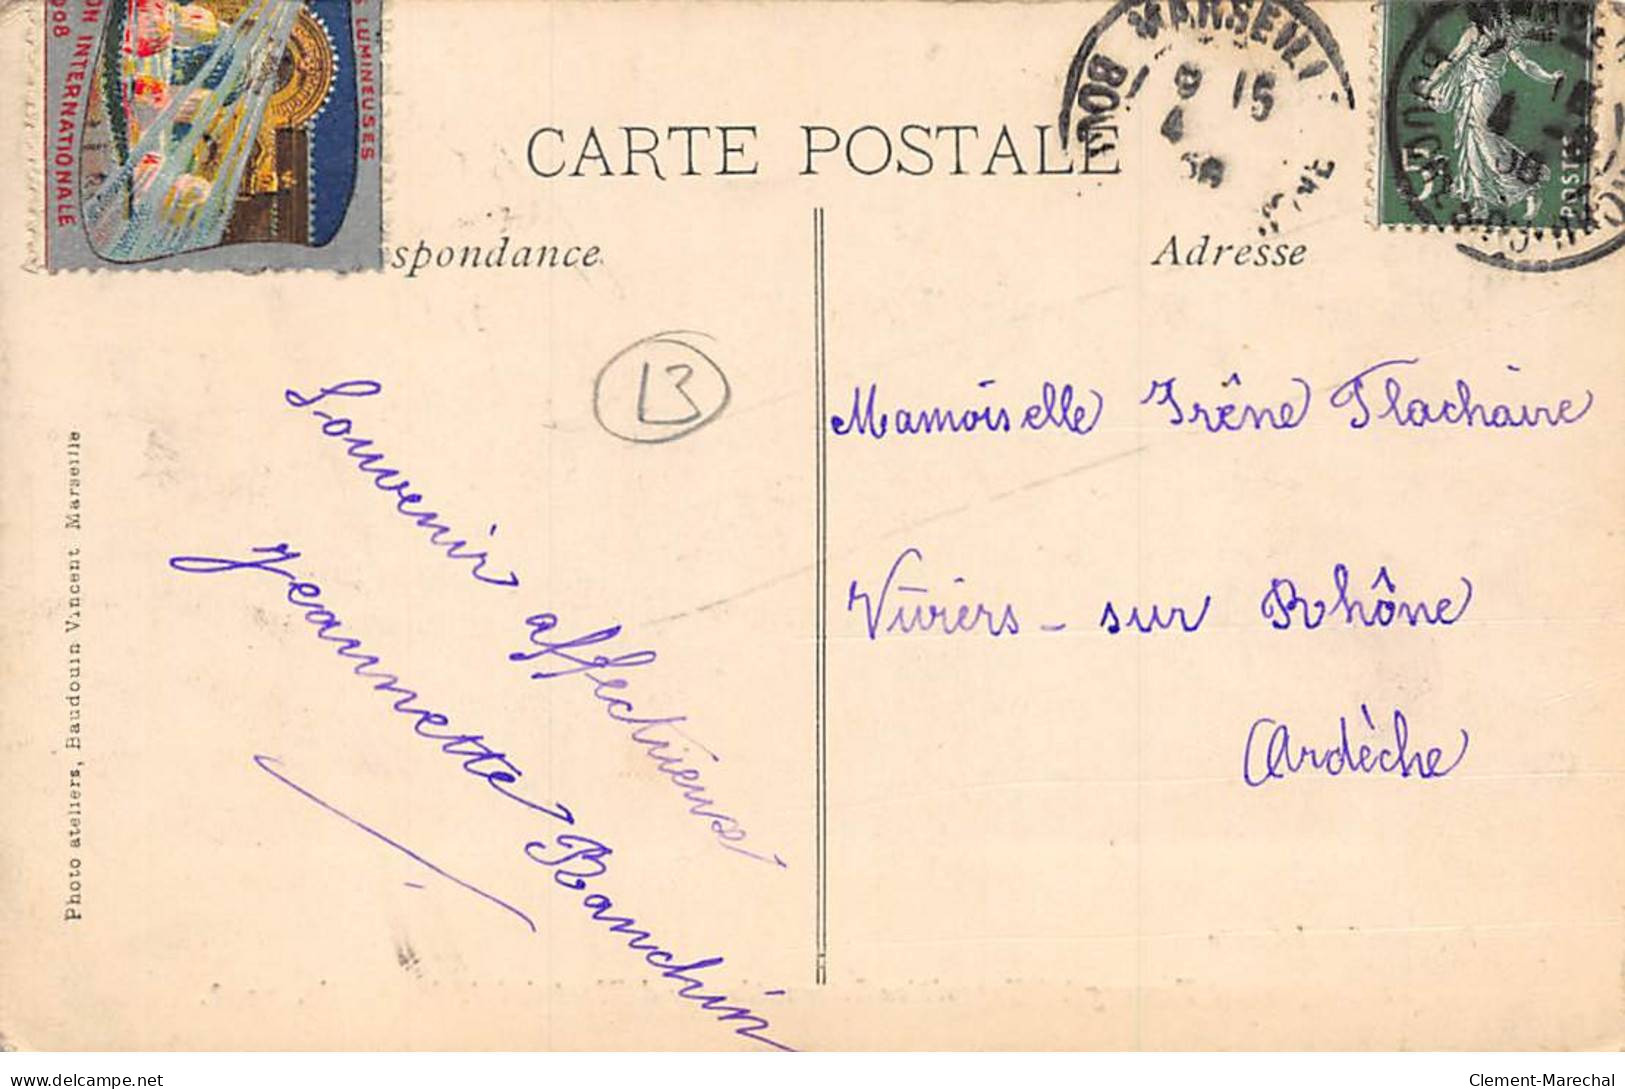 MARSEILLE - 1908 - Le Campement Touareg à L'Exposition Internationale D'Electricité - Très Bon état - Weltausstellung Elektrizität 1908 U.a.